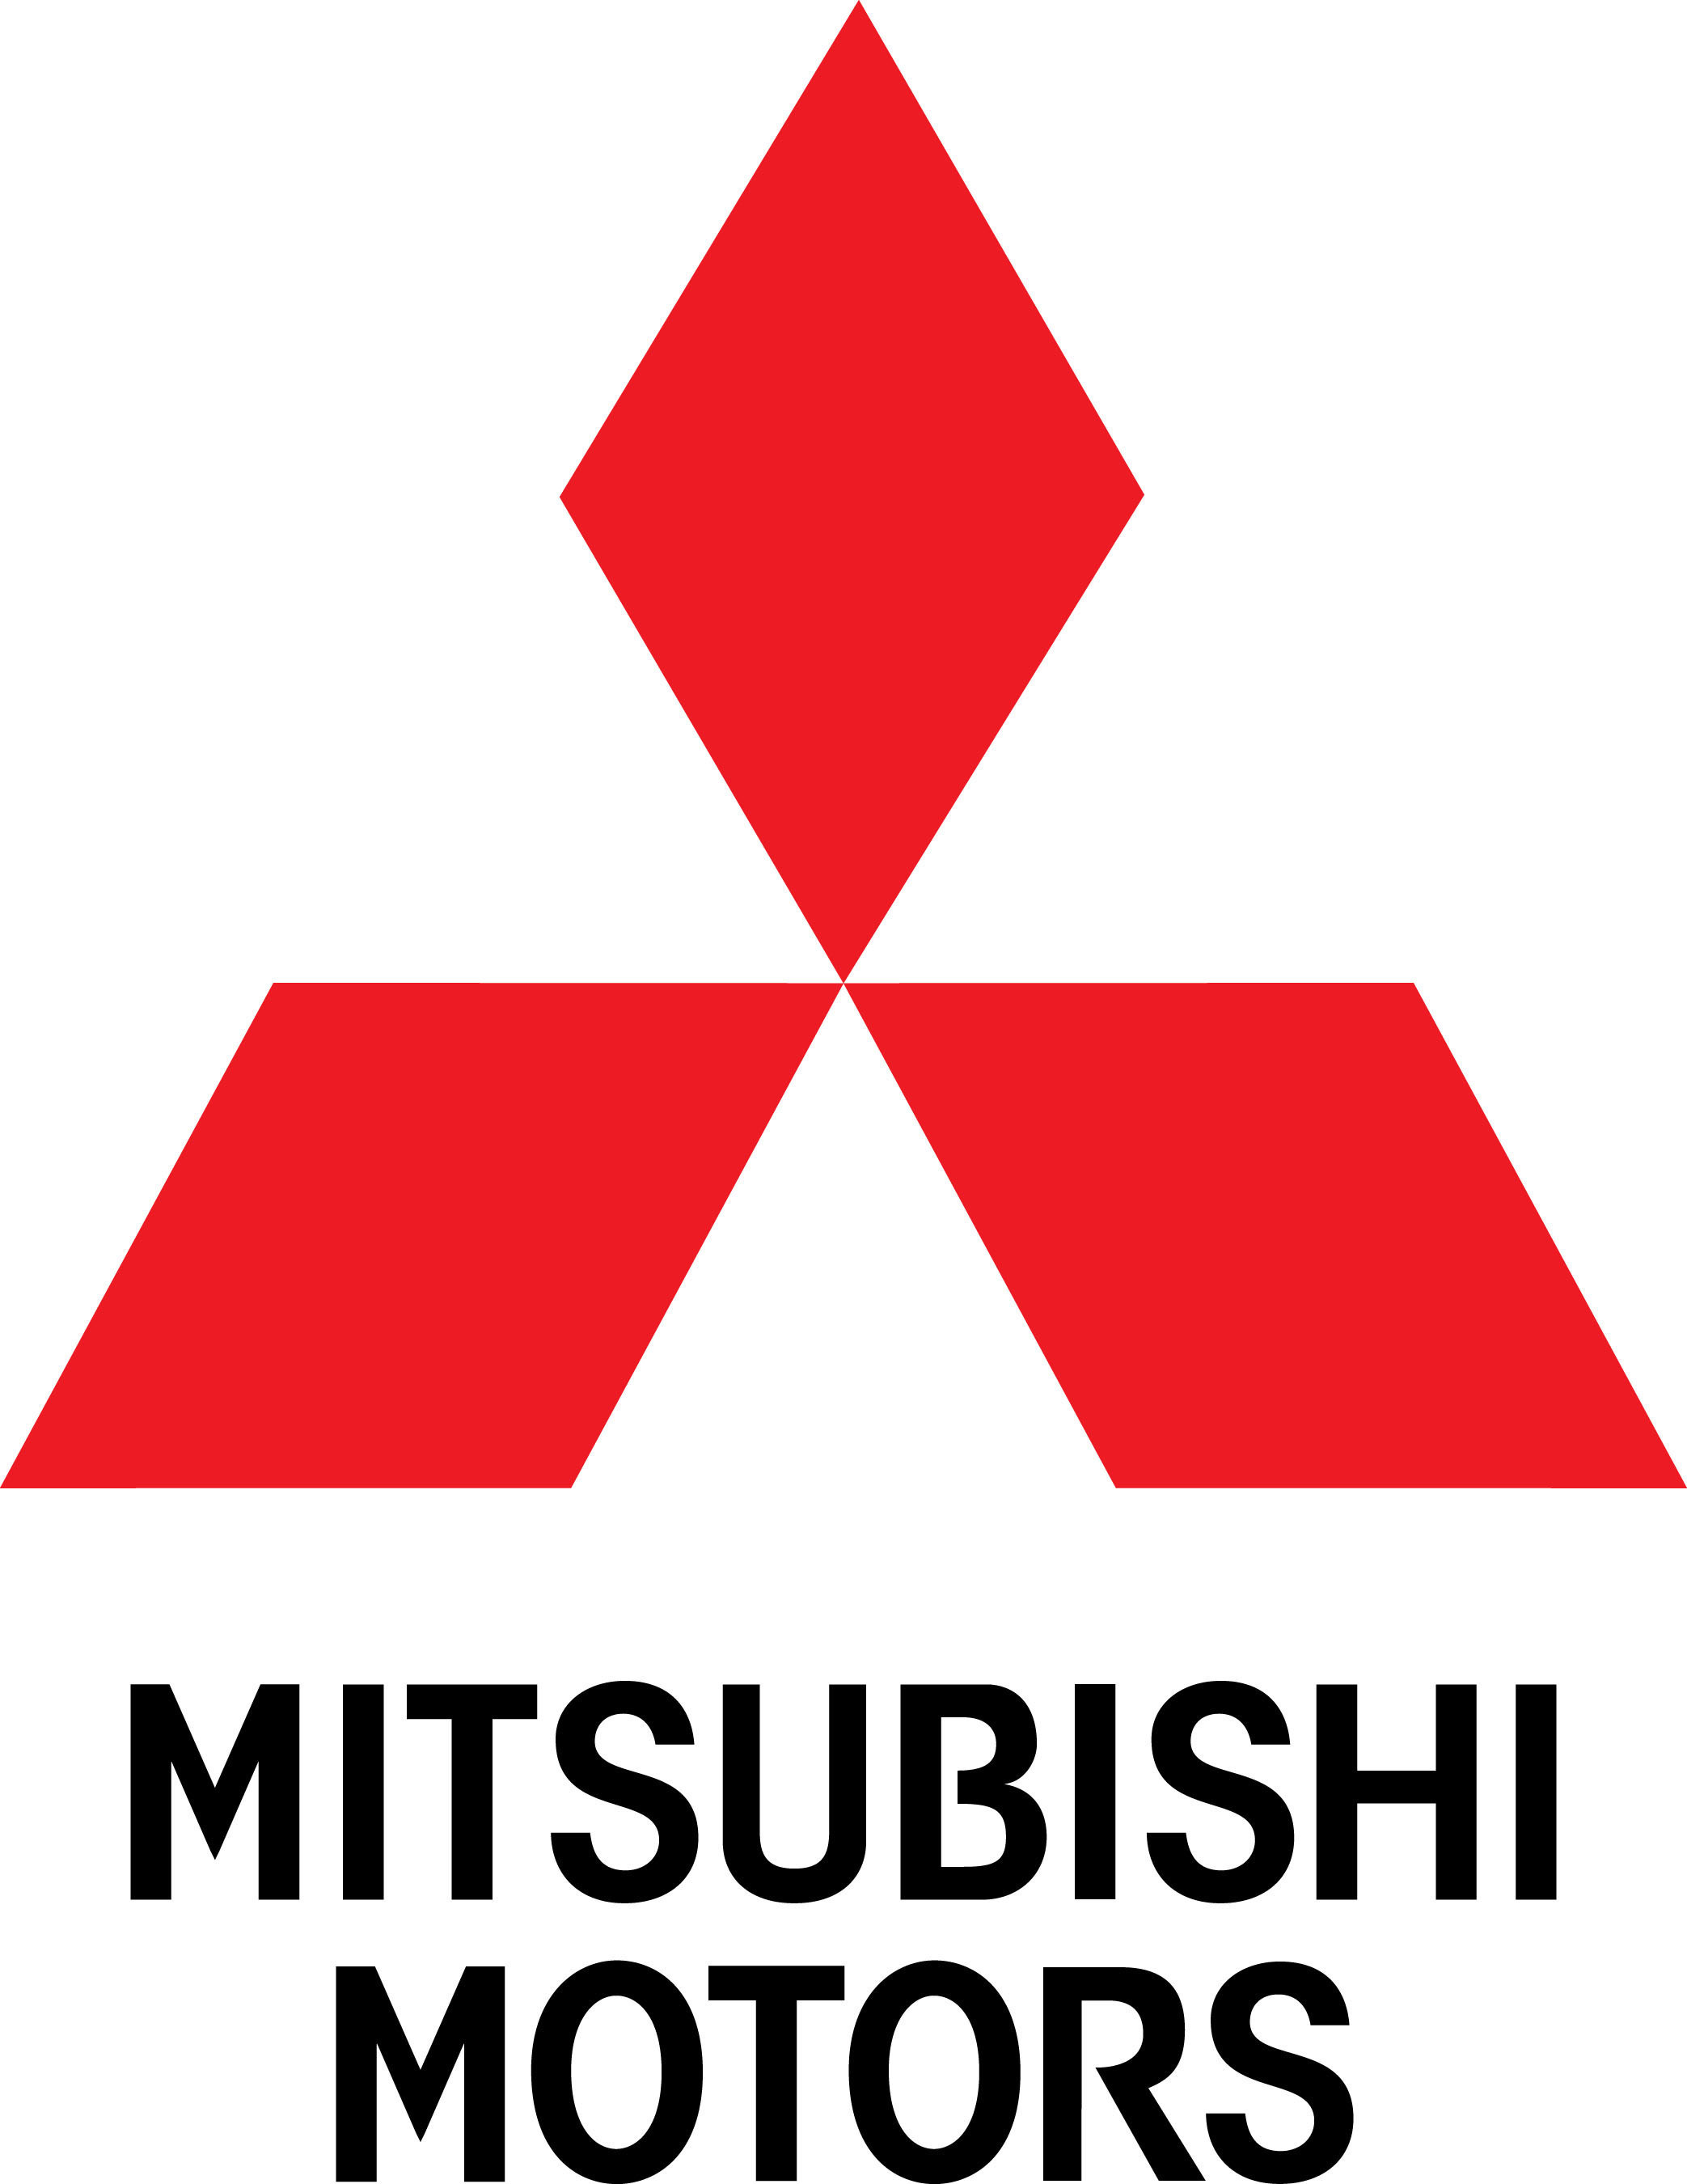 Производитель mitsubishi. Mitsubishi Motors автомобили Mitsubishi. Эмблема Митсубиси. Mitsubishi значок. Логотип Mitsubishi Motors.